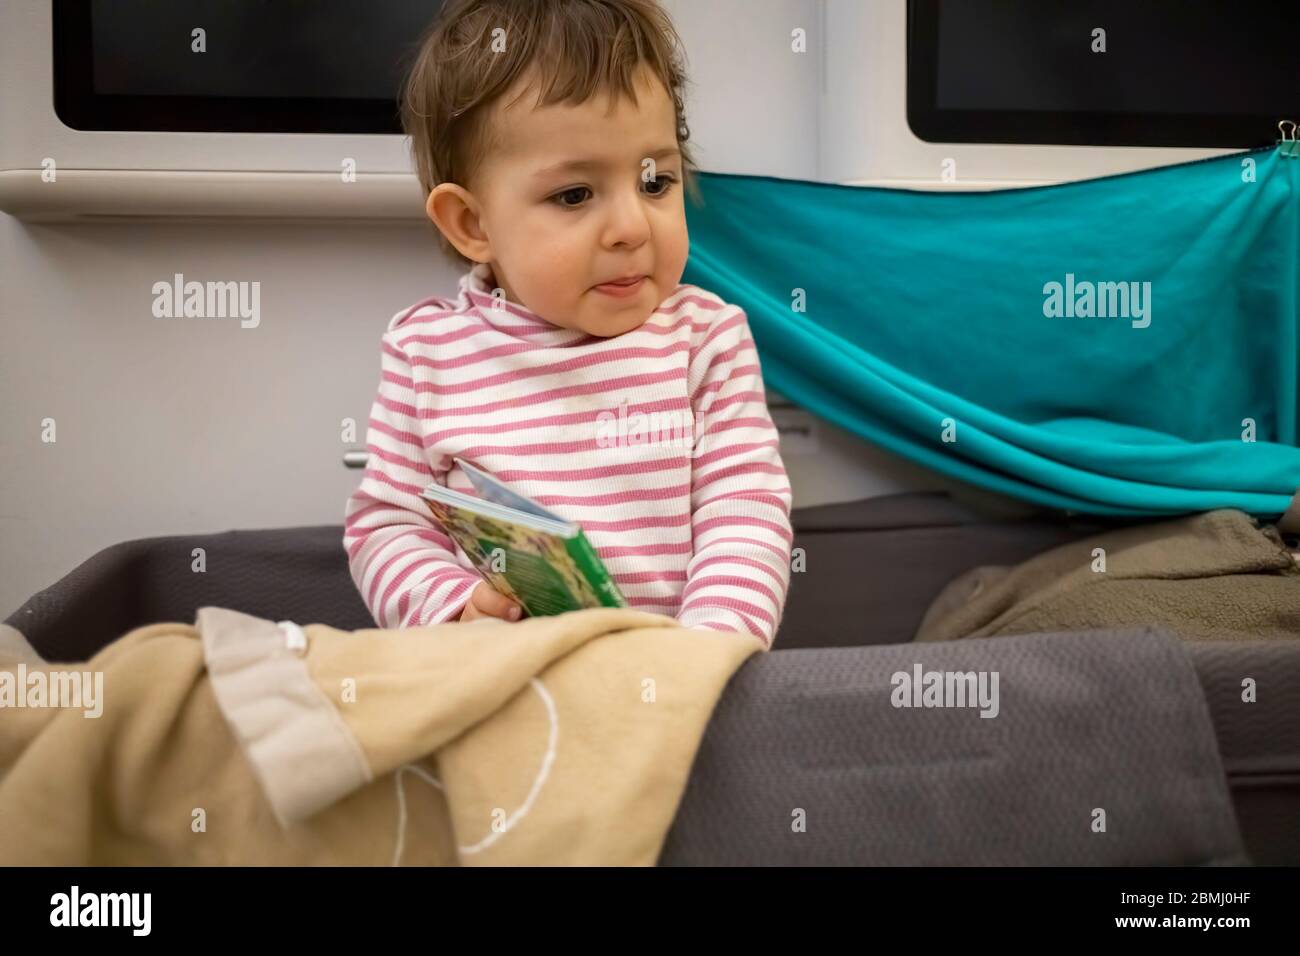 Kleines niedliches Kleinkind, das in Babyschulterwagen eines Flugzeugs sitzt und mit einem erschrockenden Blick herum schaut. Stockfoto